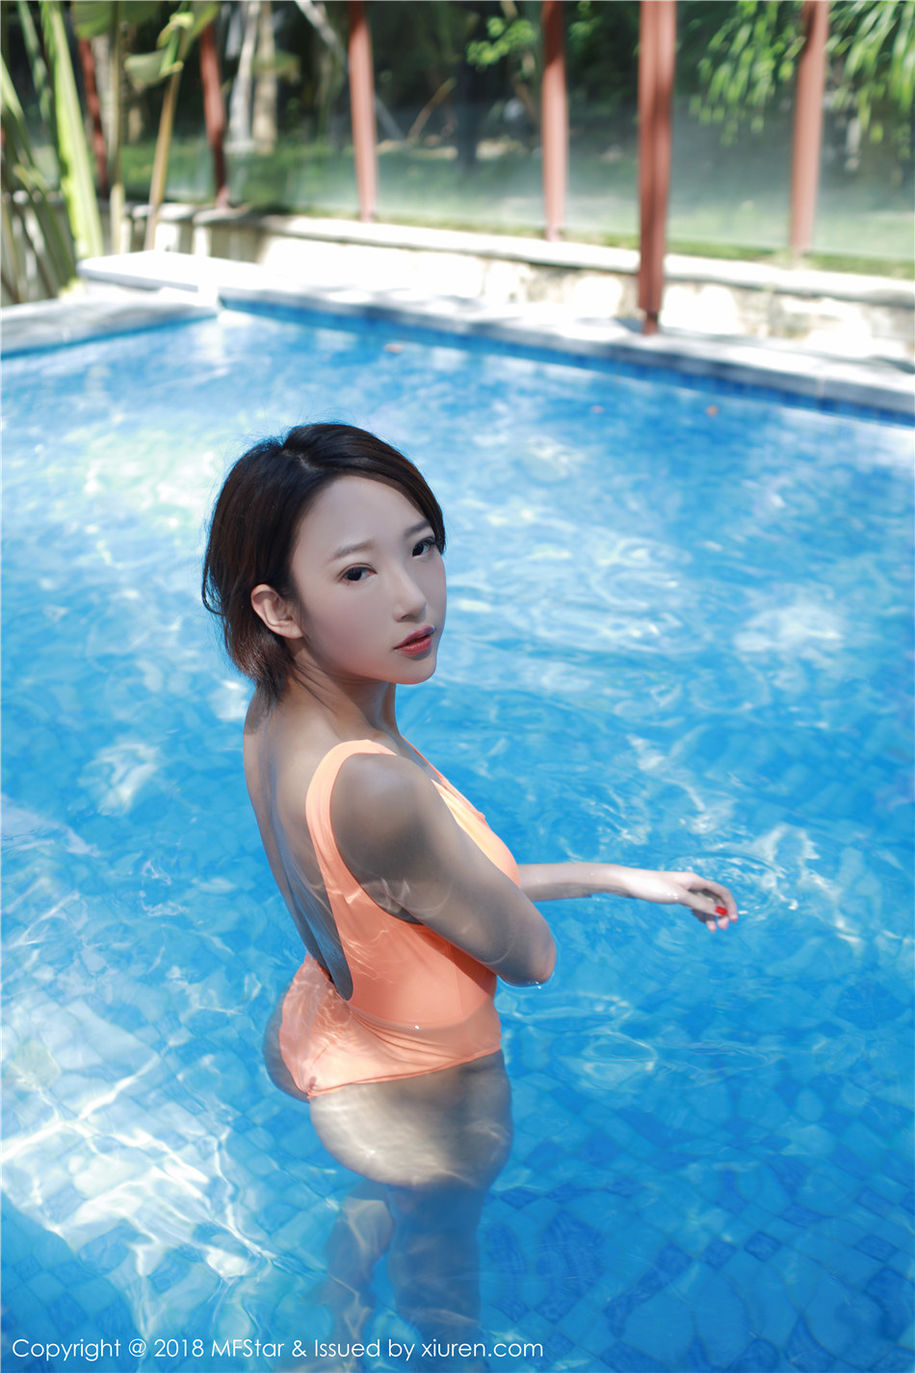 短发美女栗子Riz泳装美胸泳池外拍写真集(第9页)